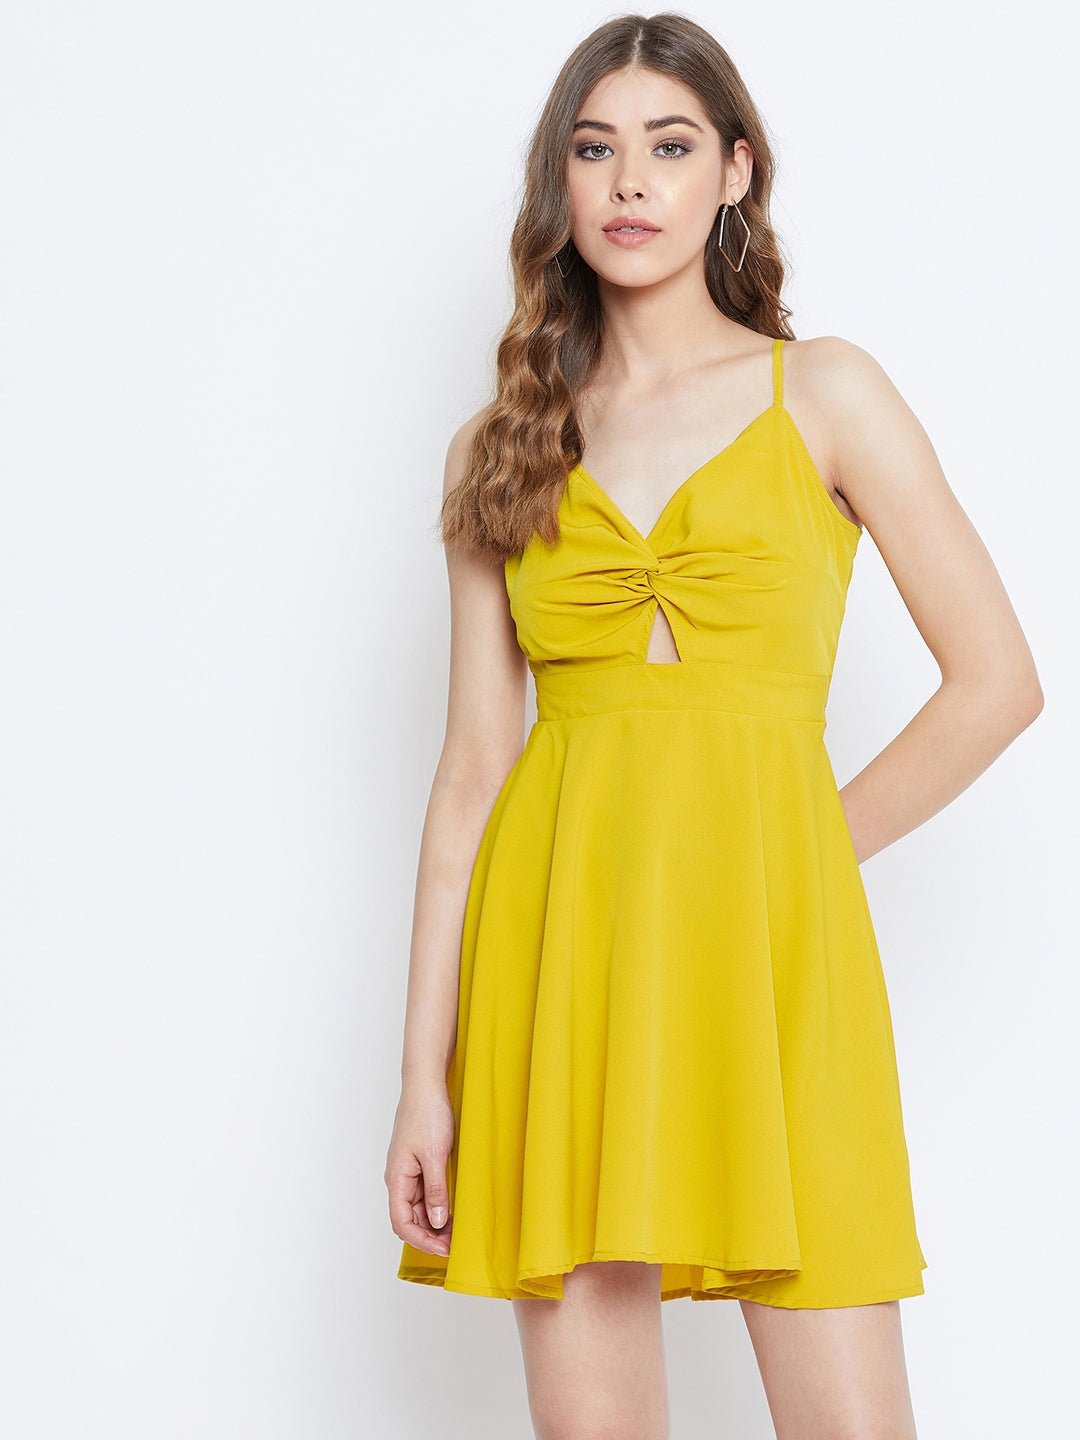 Folk Republic Women Solid Yellow Front Twist Knot Fit & Flare Mini Dress - #folk republic#